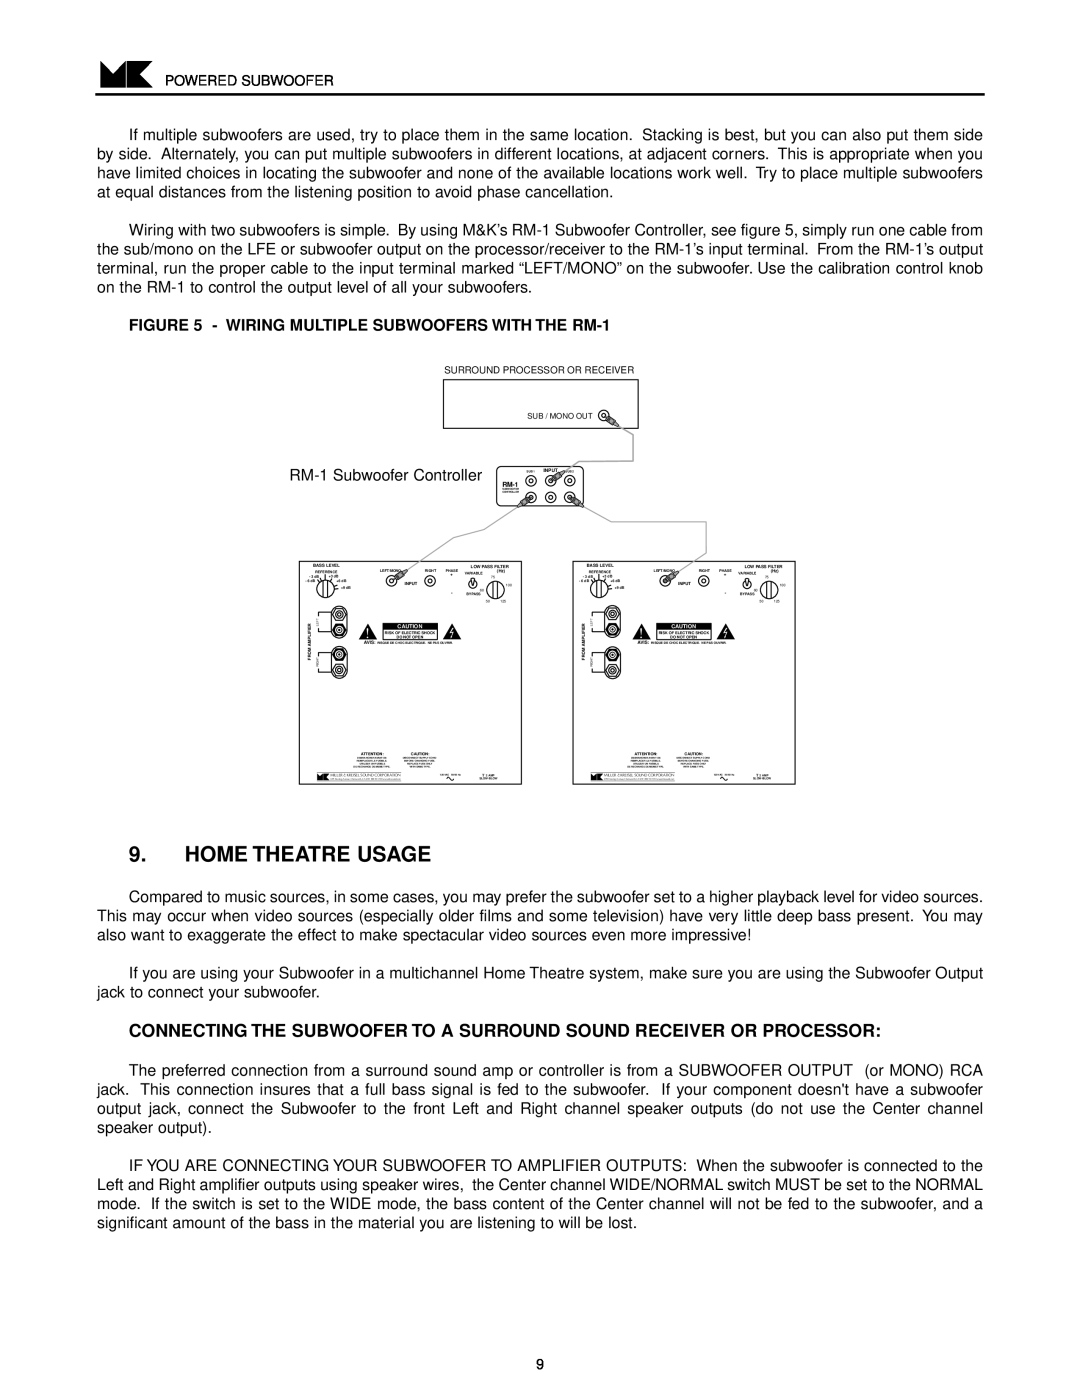 MK Sound V-851, V-850 operation manual Home Theatre Usage, RM-1Subwoofer Controller 